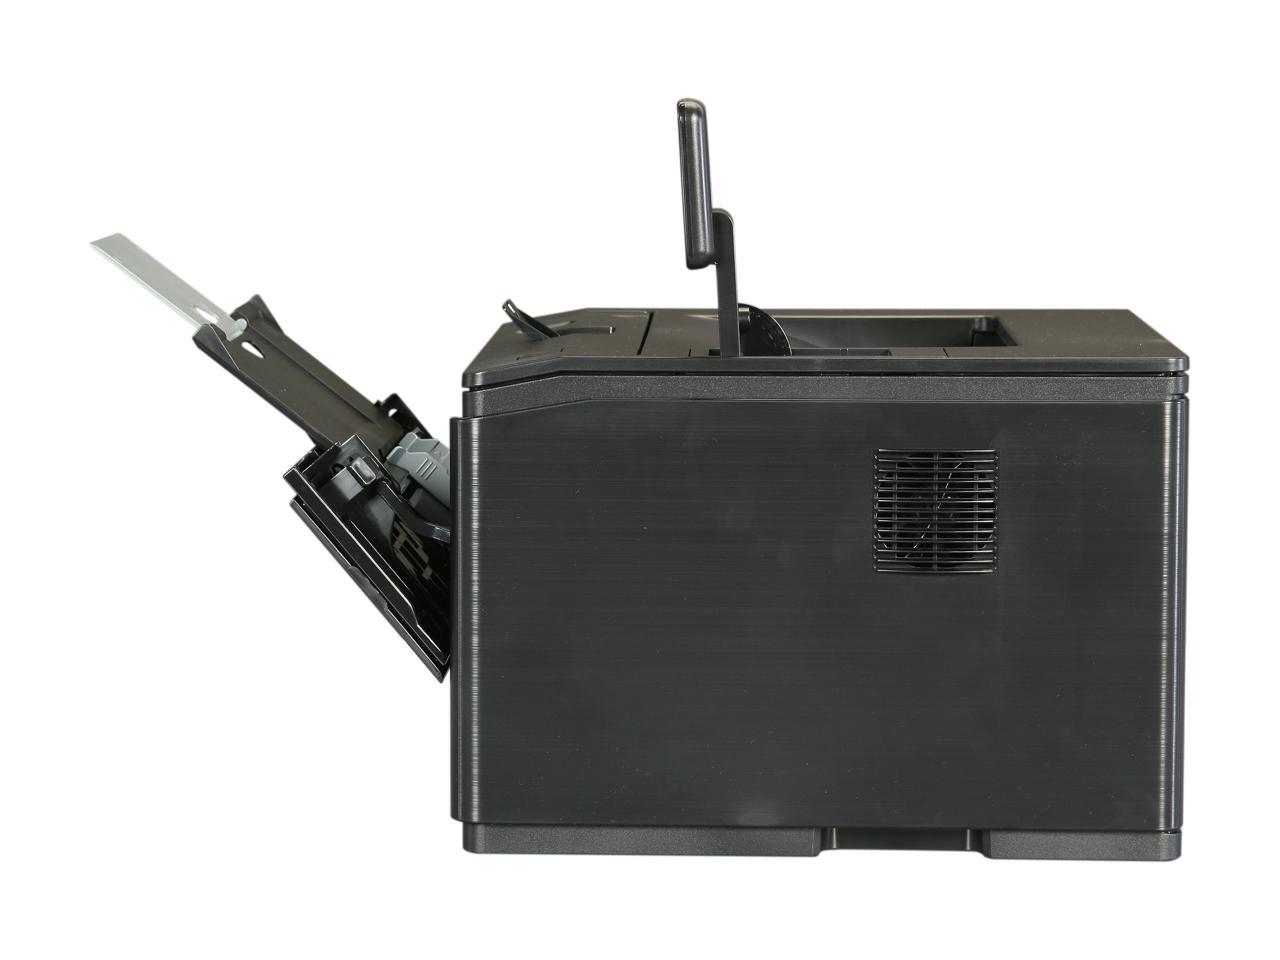 HP LaserJet Pro 400 M401dn Laser Printer - Newegg.com